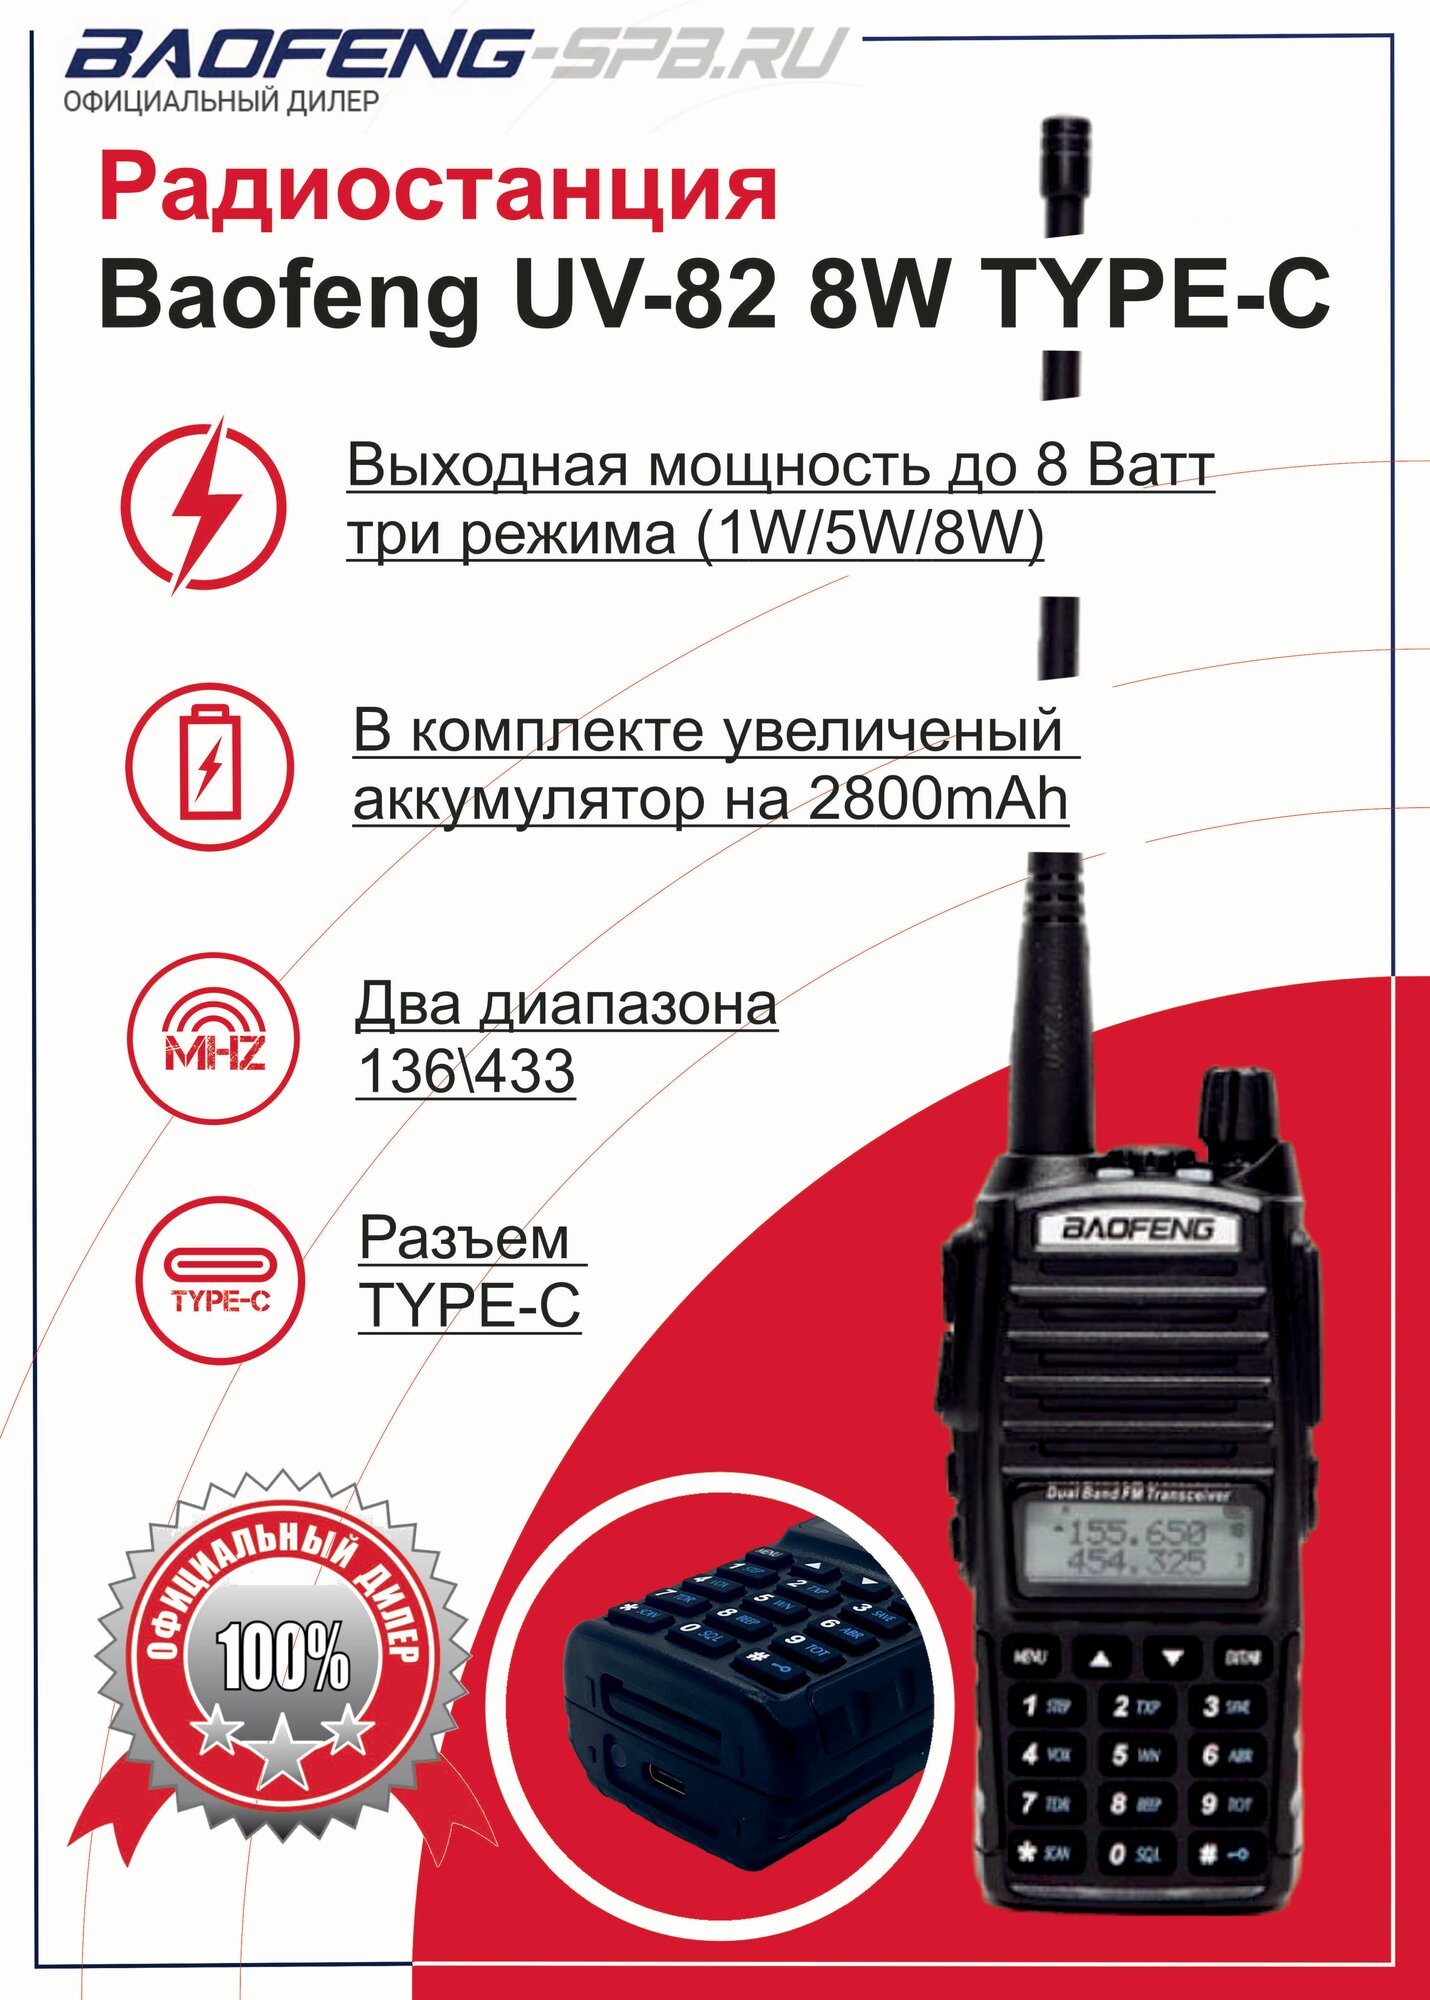 Рация Baofeng UV-82 8W портативная, мощность 8 Вт, TYPE-C